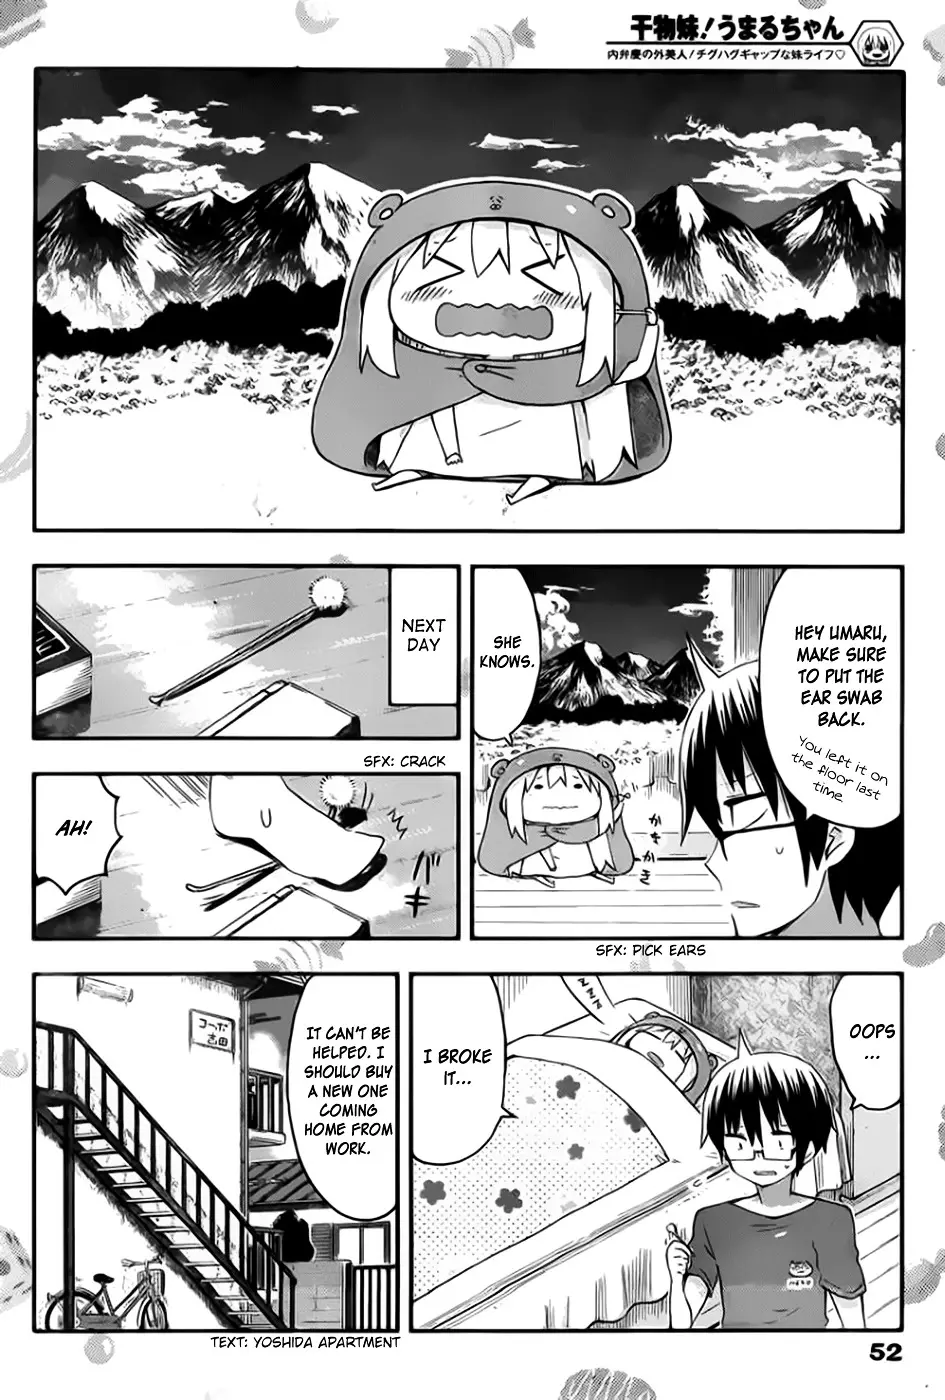 Himouto! Umaru-Chan - 74 page 3